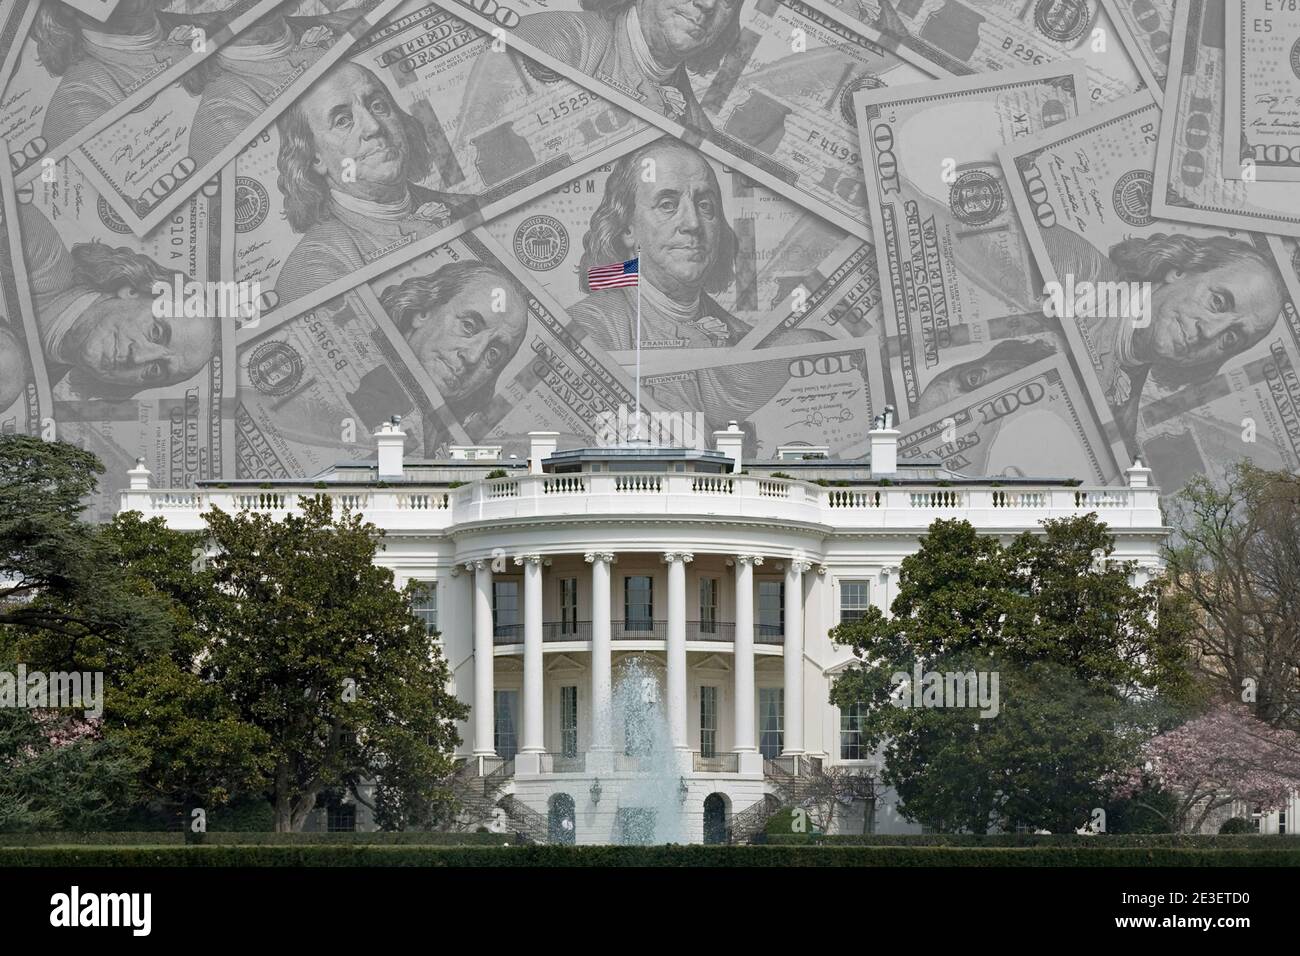 Les États-Unis d'Amérique la Maison Blanche des États-Unis à Washington D.C. est superposée sur une collection de billets de 100 dollars, avec de la place pour le texte ci-dessus. Banque D'Images